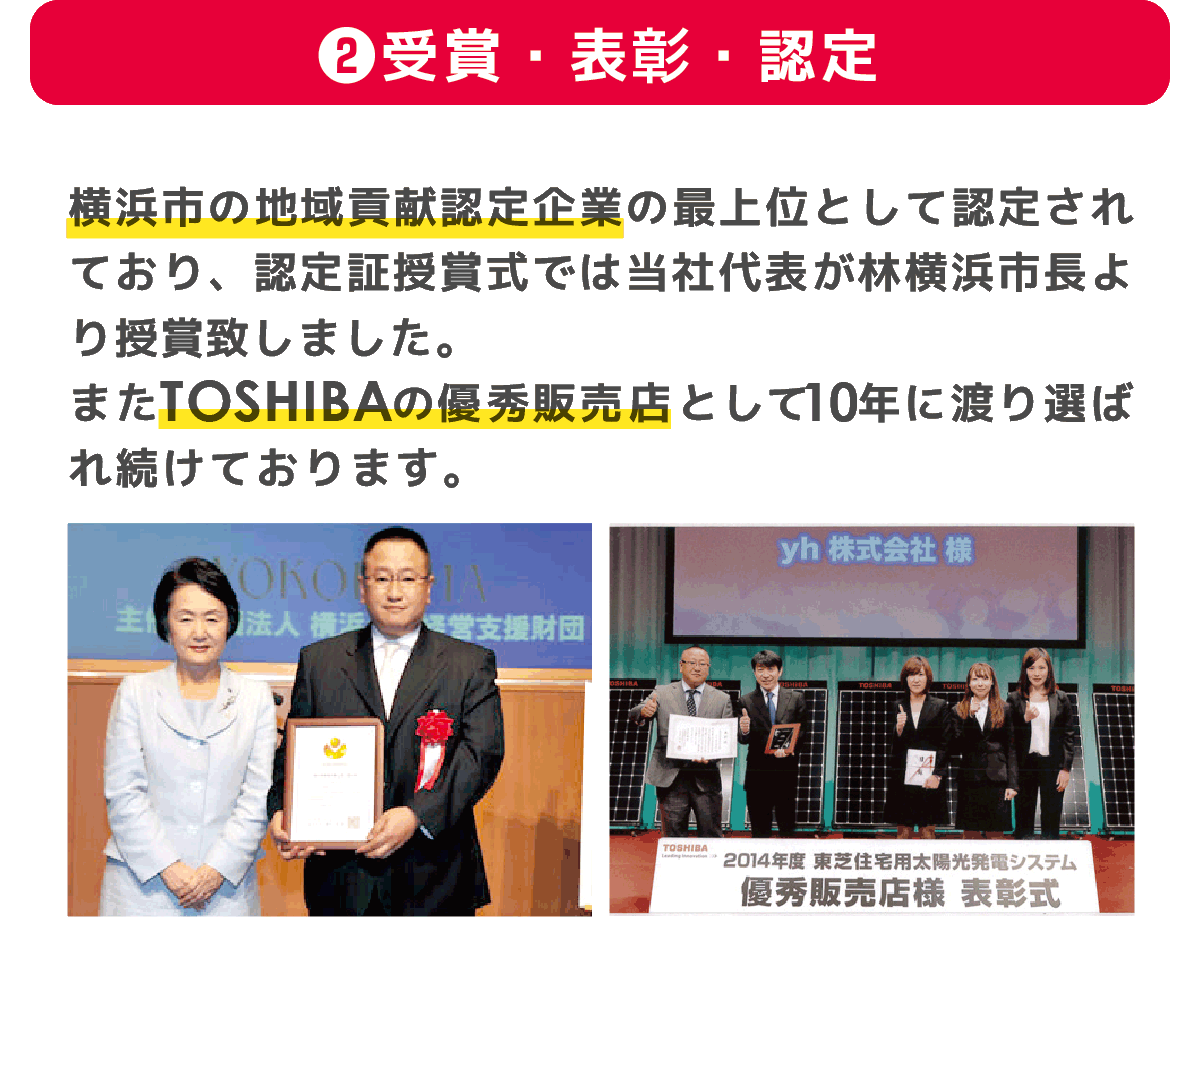 横浜市の地域貢献認定企業として選ばれ続けております。また東芝の優秀販売店として10年以上表彰され続けた実績もございます。